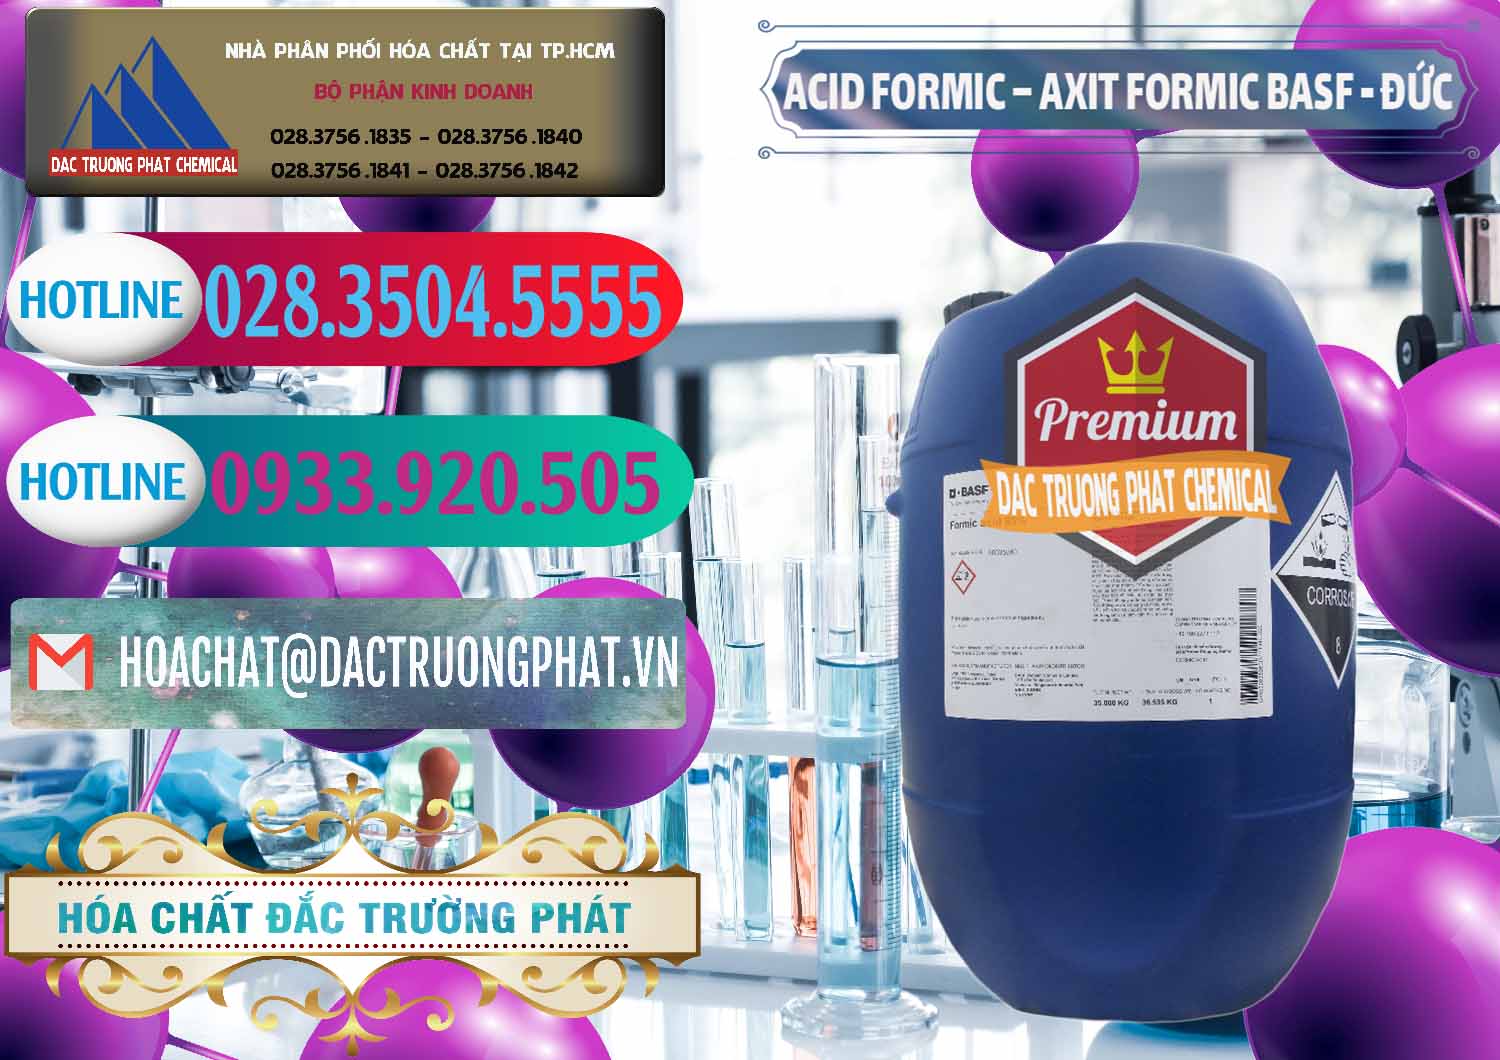 Cty phân phối _ bán Acid Formic - Axit Formic BASF Đức Germany - 0028 - Nơi chuyên phân phối & cung ứng hóa chất tại TP.HCM - truongphat.vn